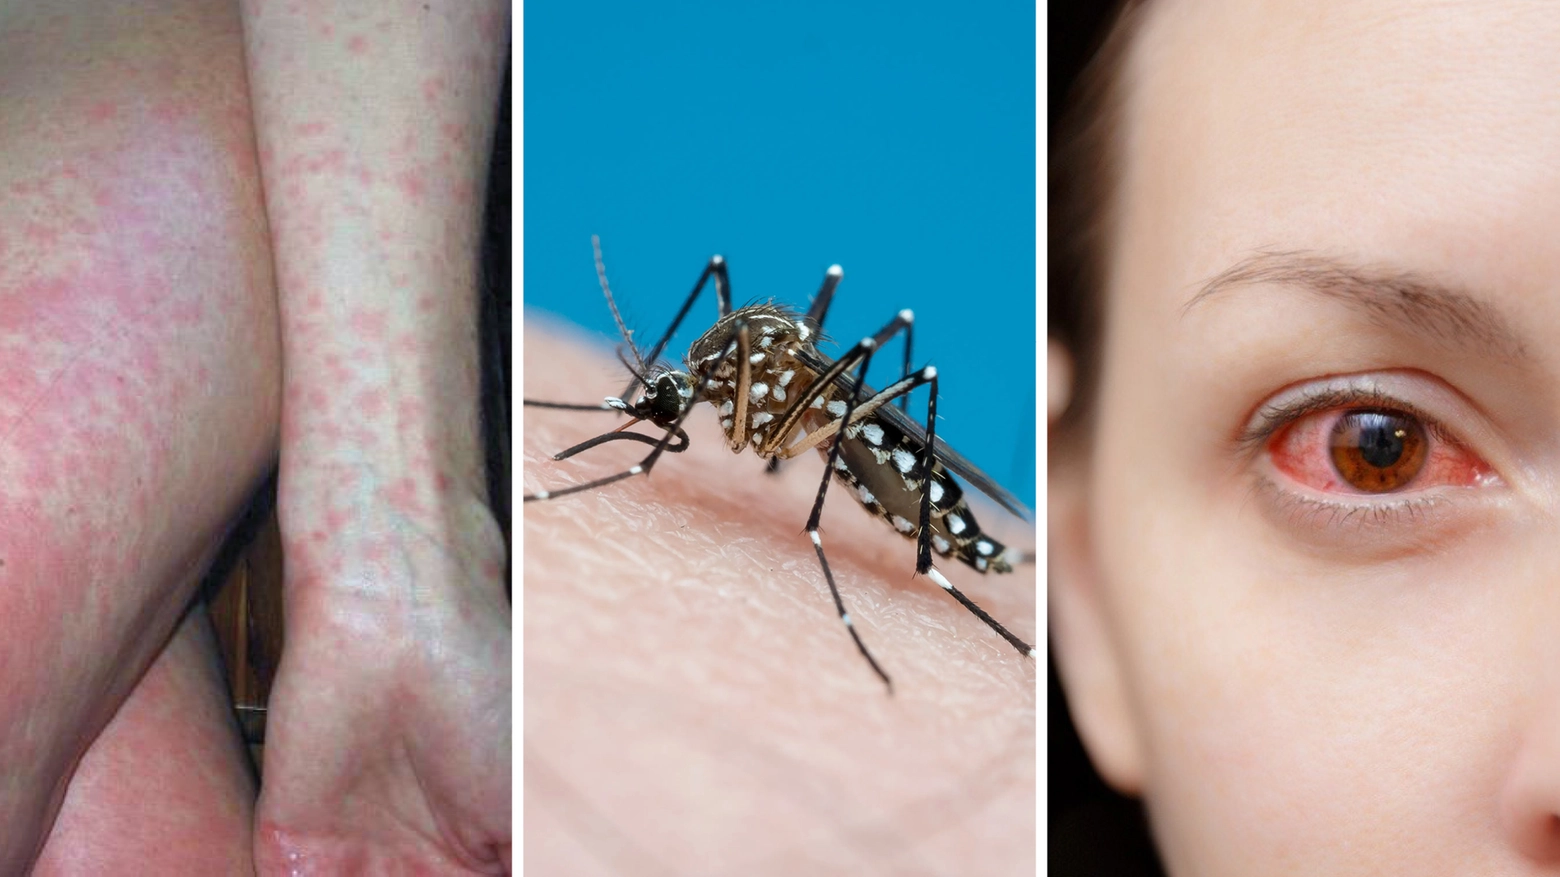 La malattia portata dalla zanzara Aedes (al centro) può provocare rush e dolore intenso alla testa e dietro agli occhi